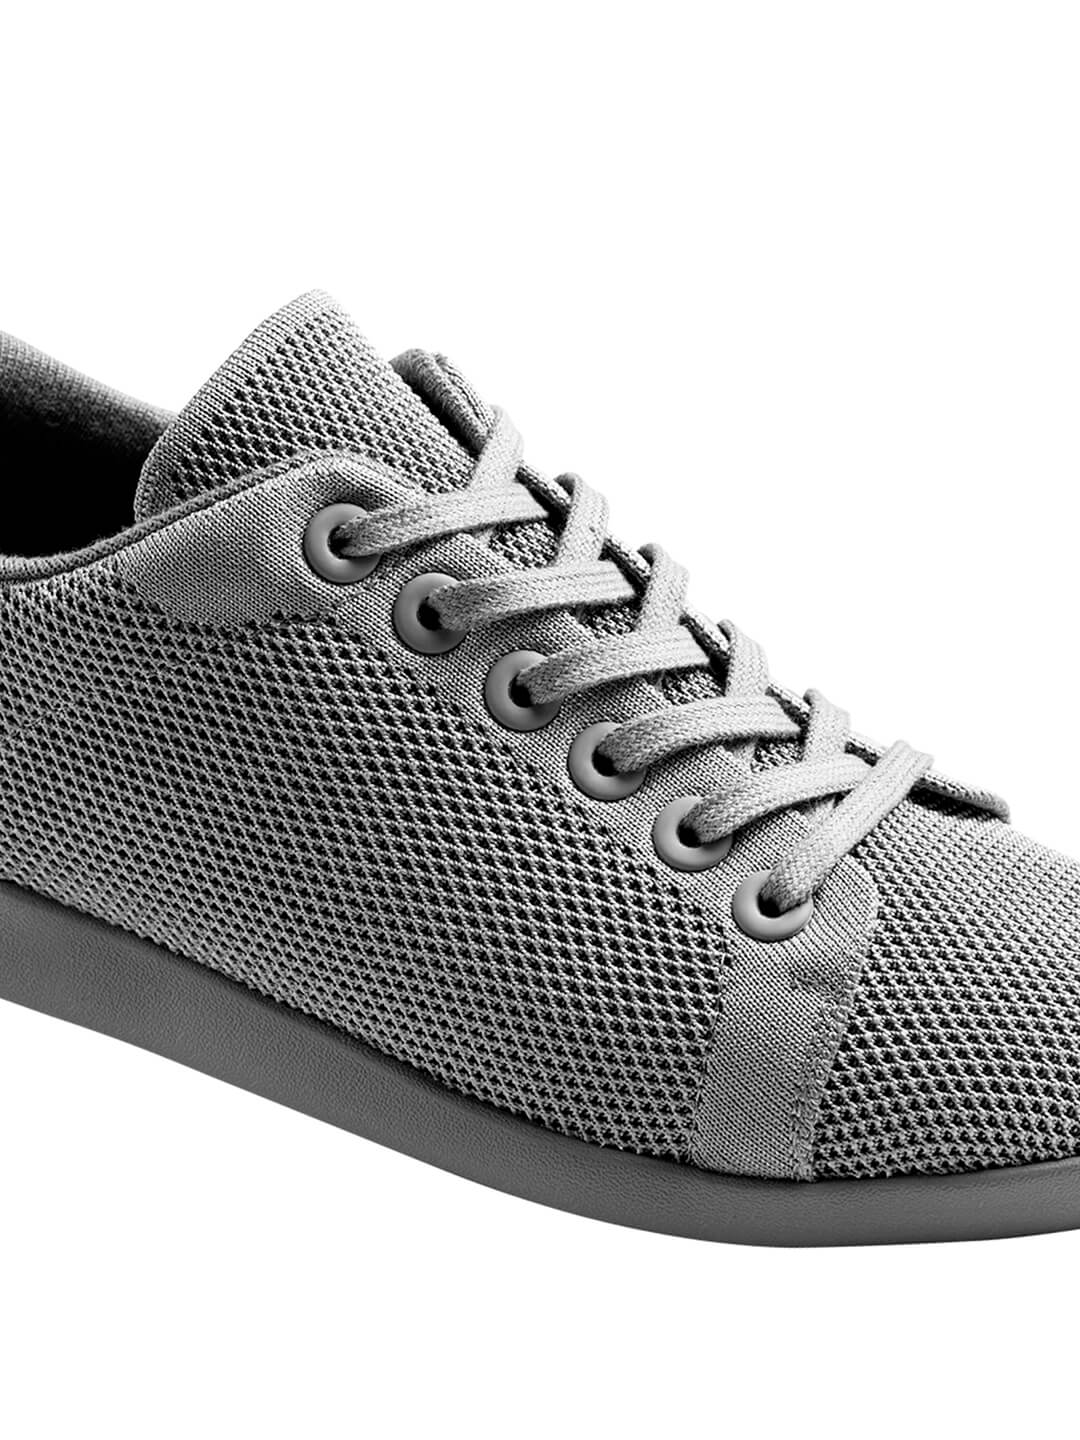  Footwear, Unisex Footwear, Grey Sneakers